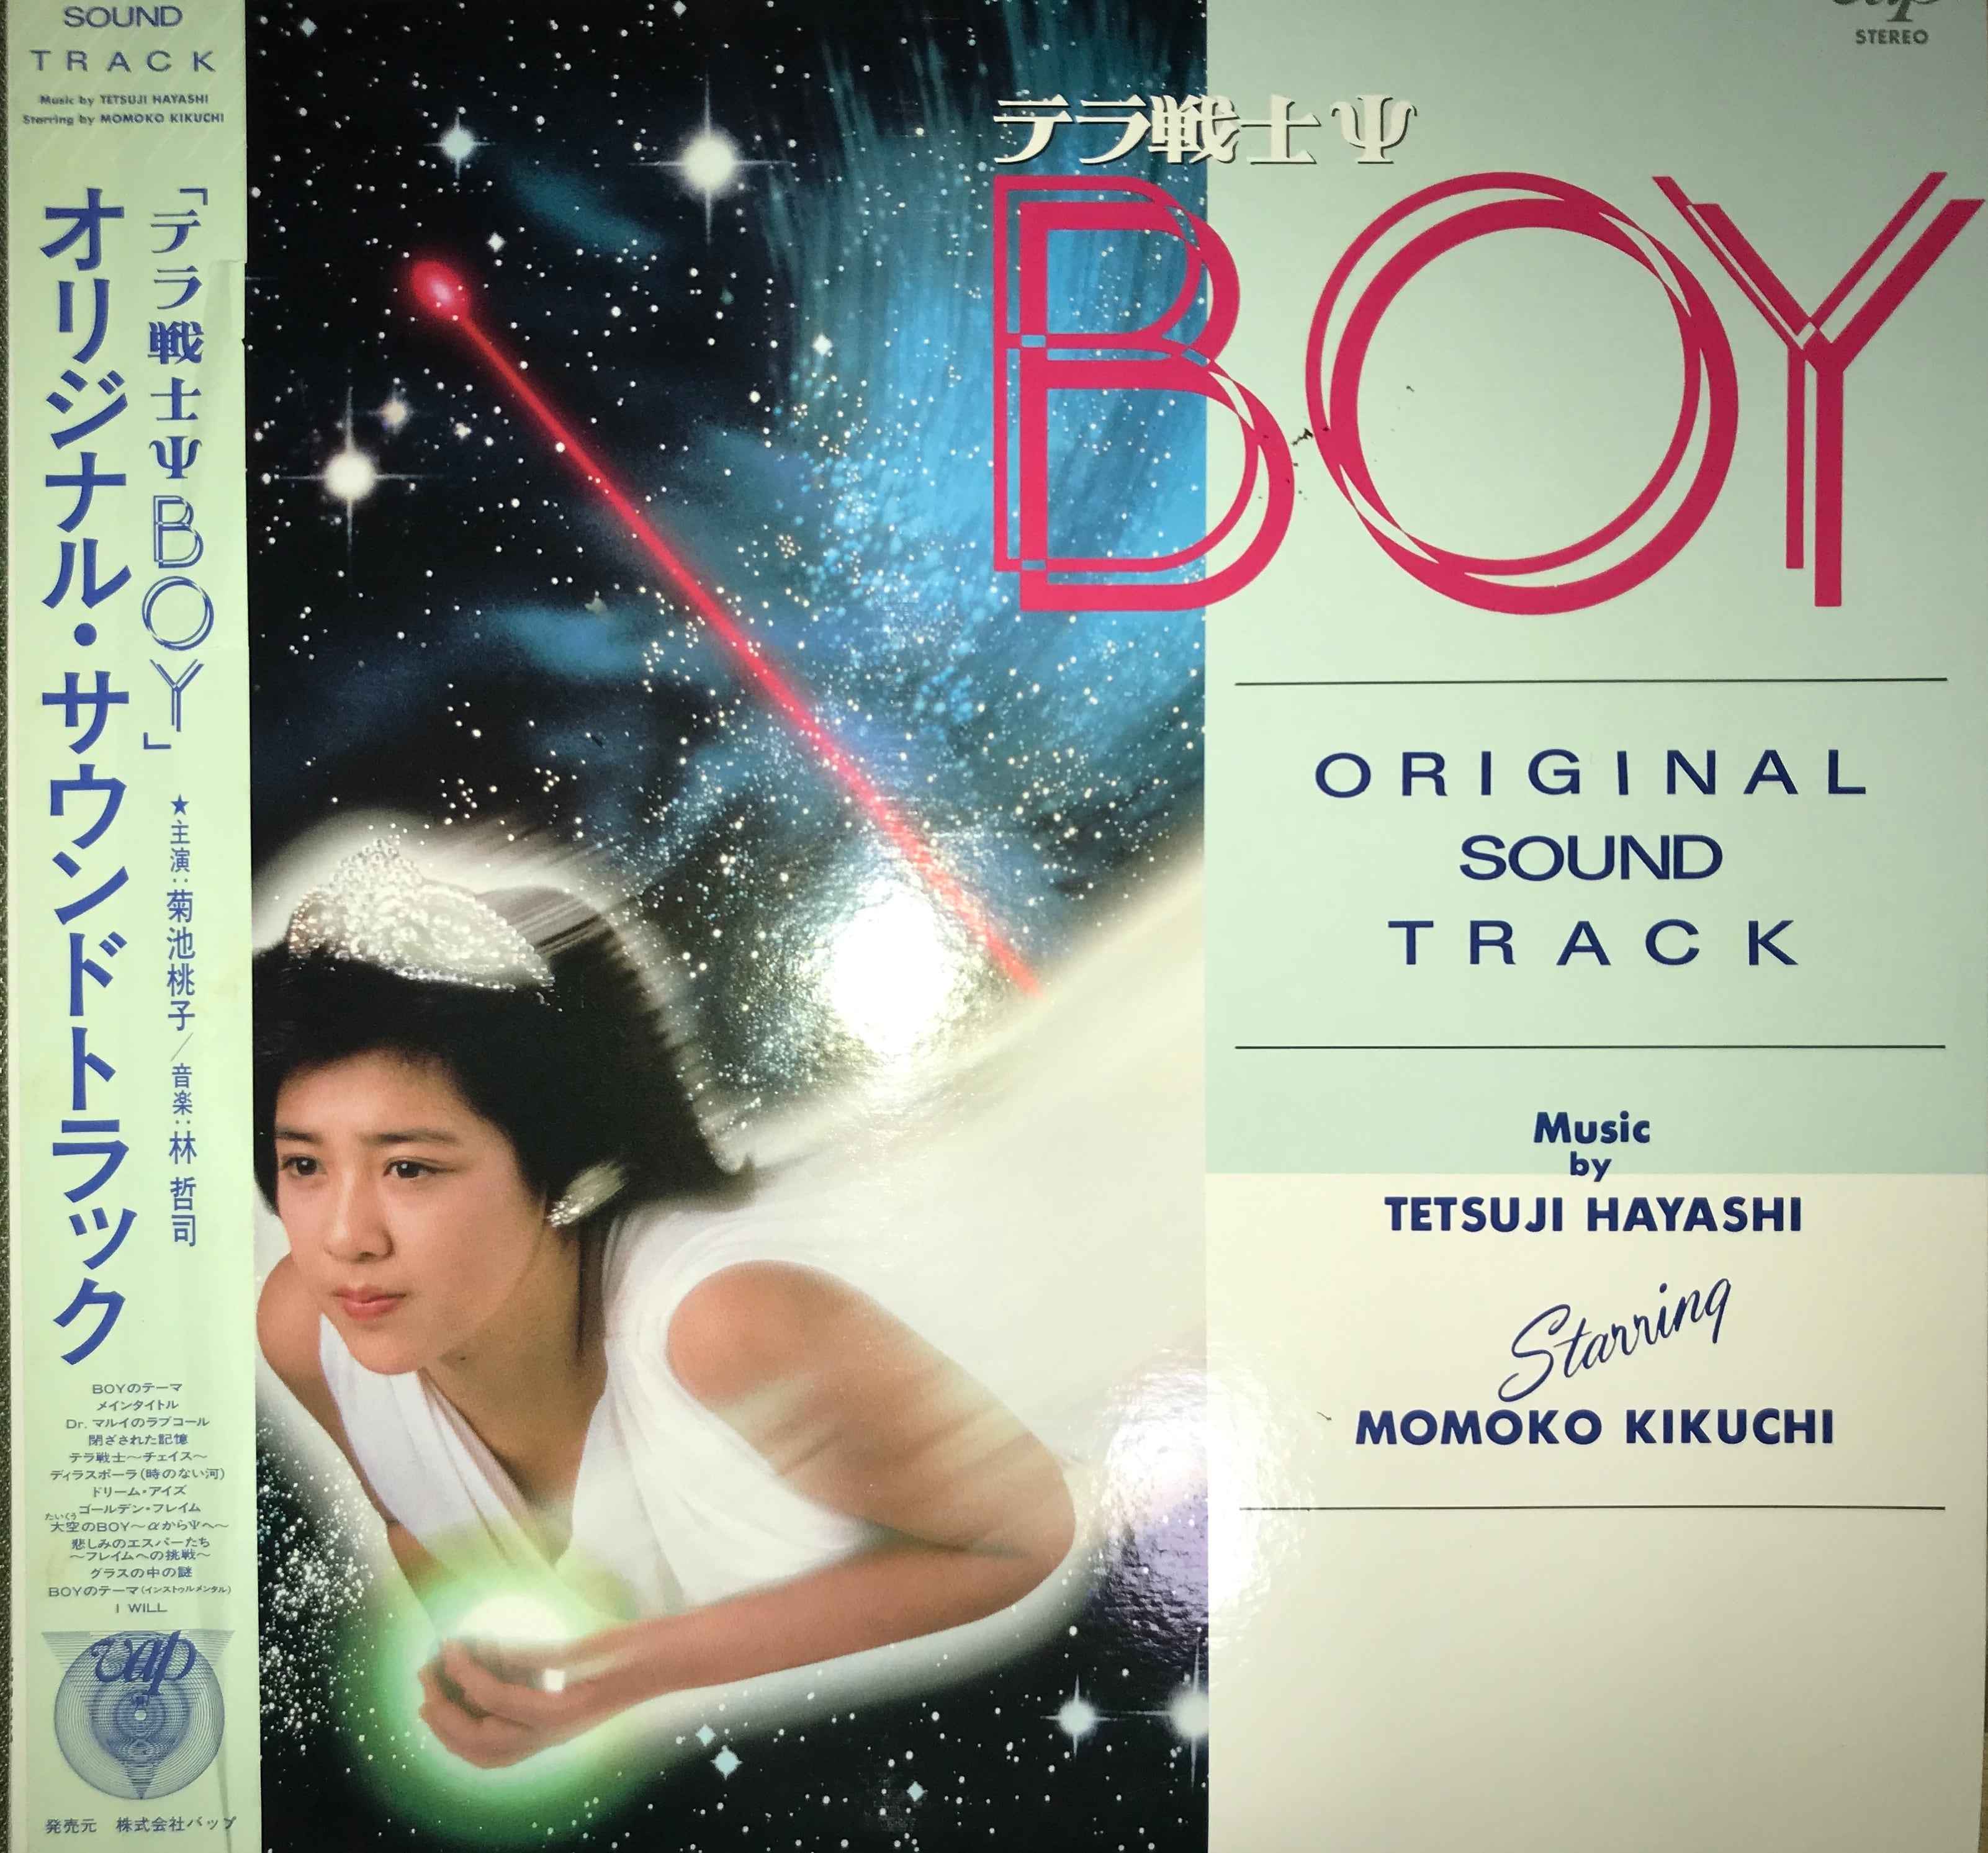 最終値下 276 菊池桃子 新品 テラ戦士 BOY オリジナルサウンドトラック